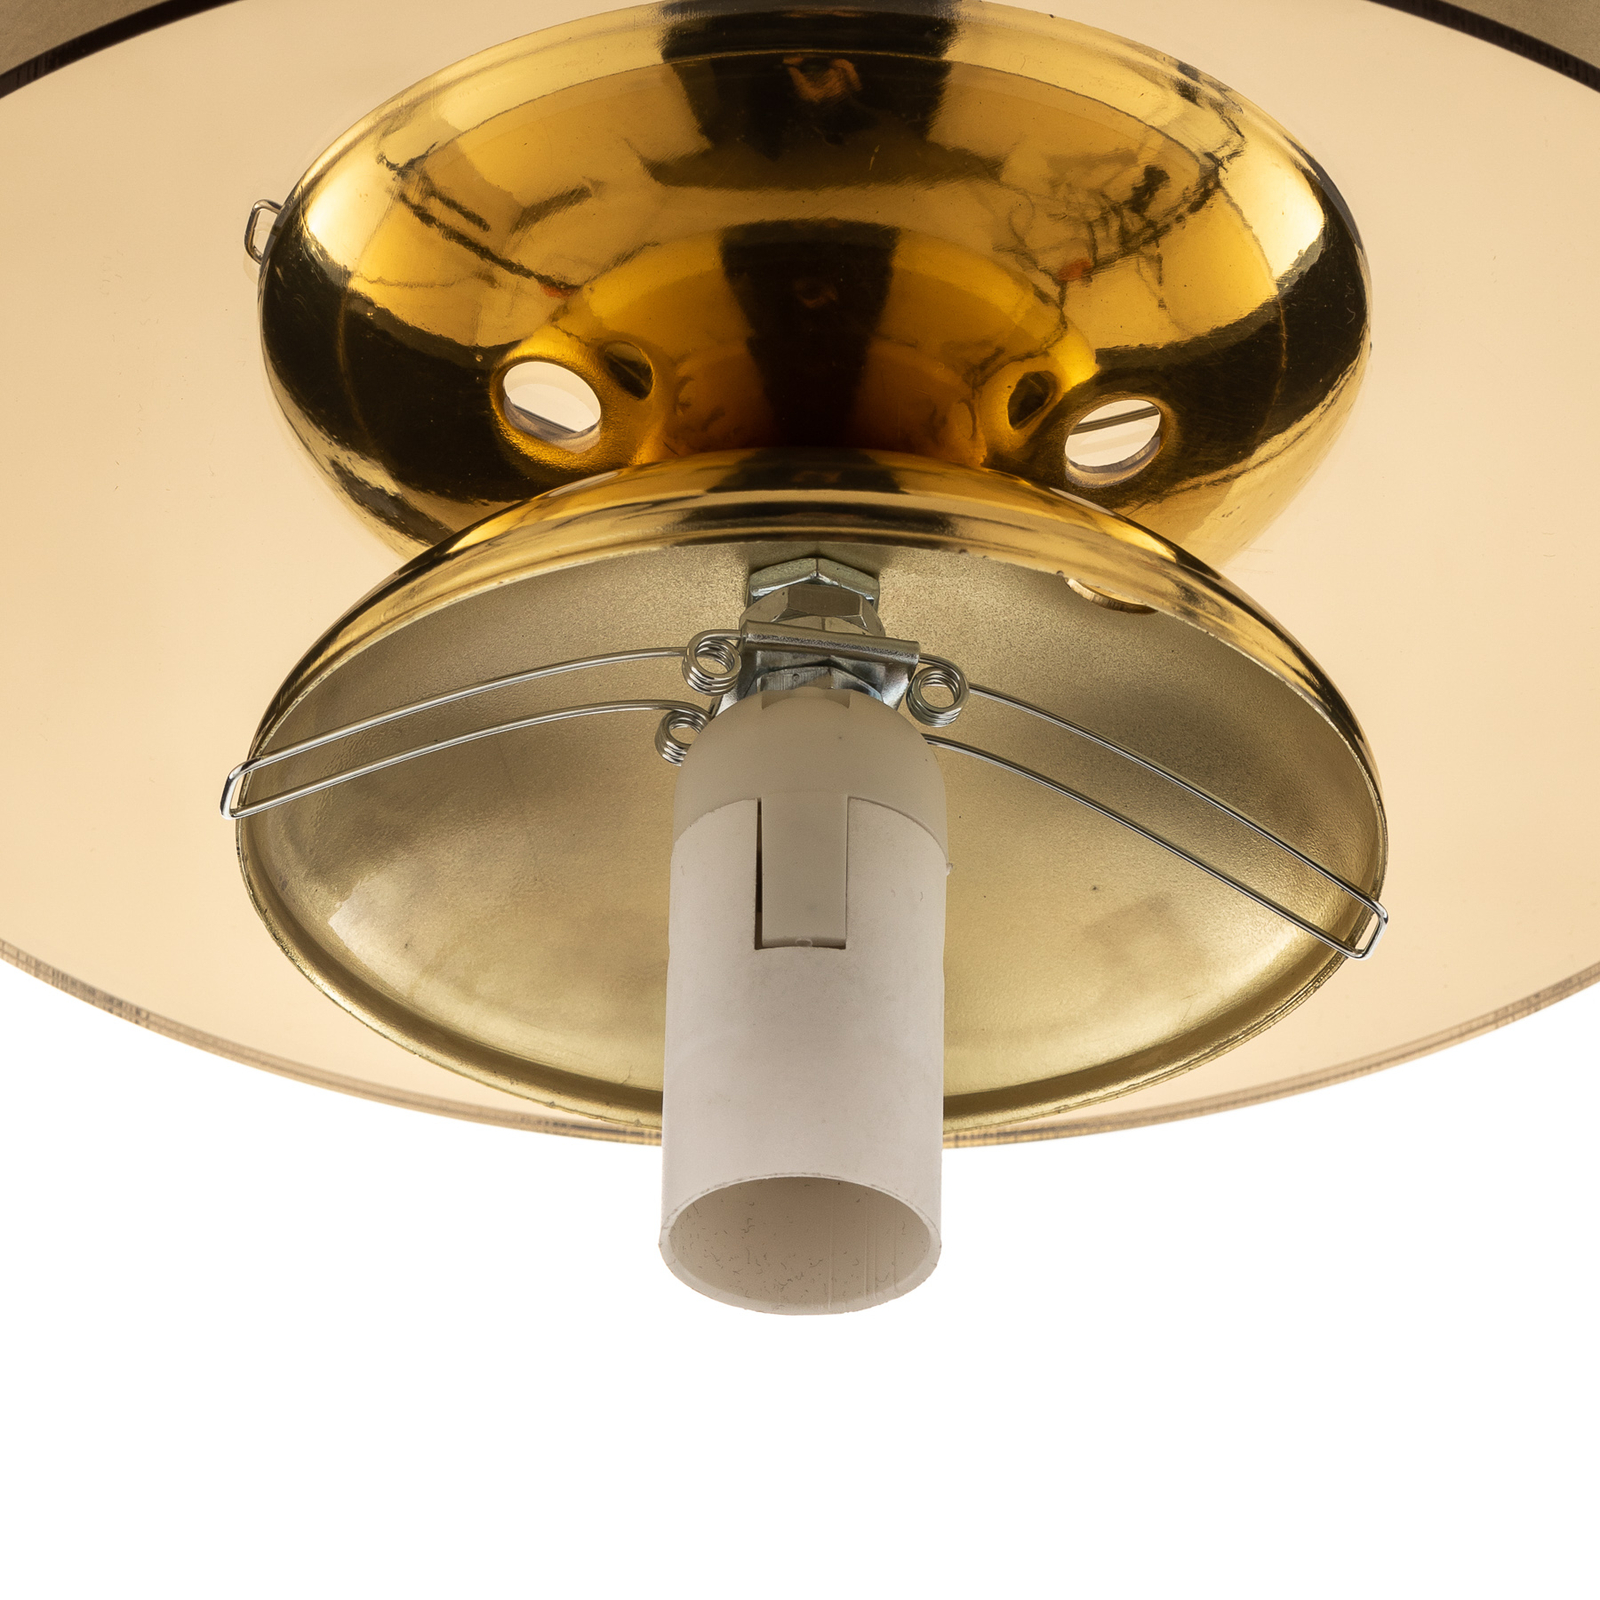 Plato ceiling light, one-bulb, Ø 22 cm